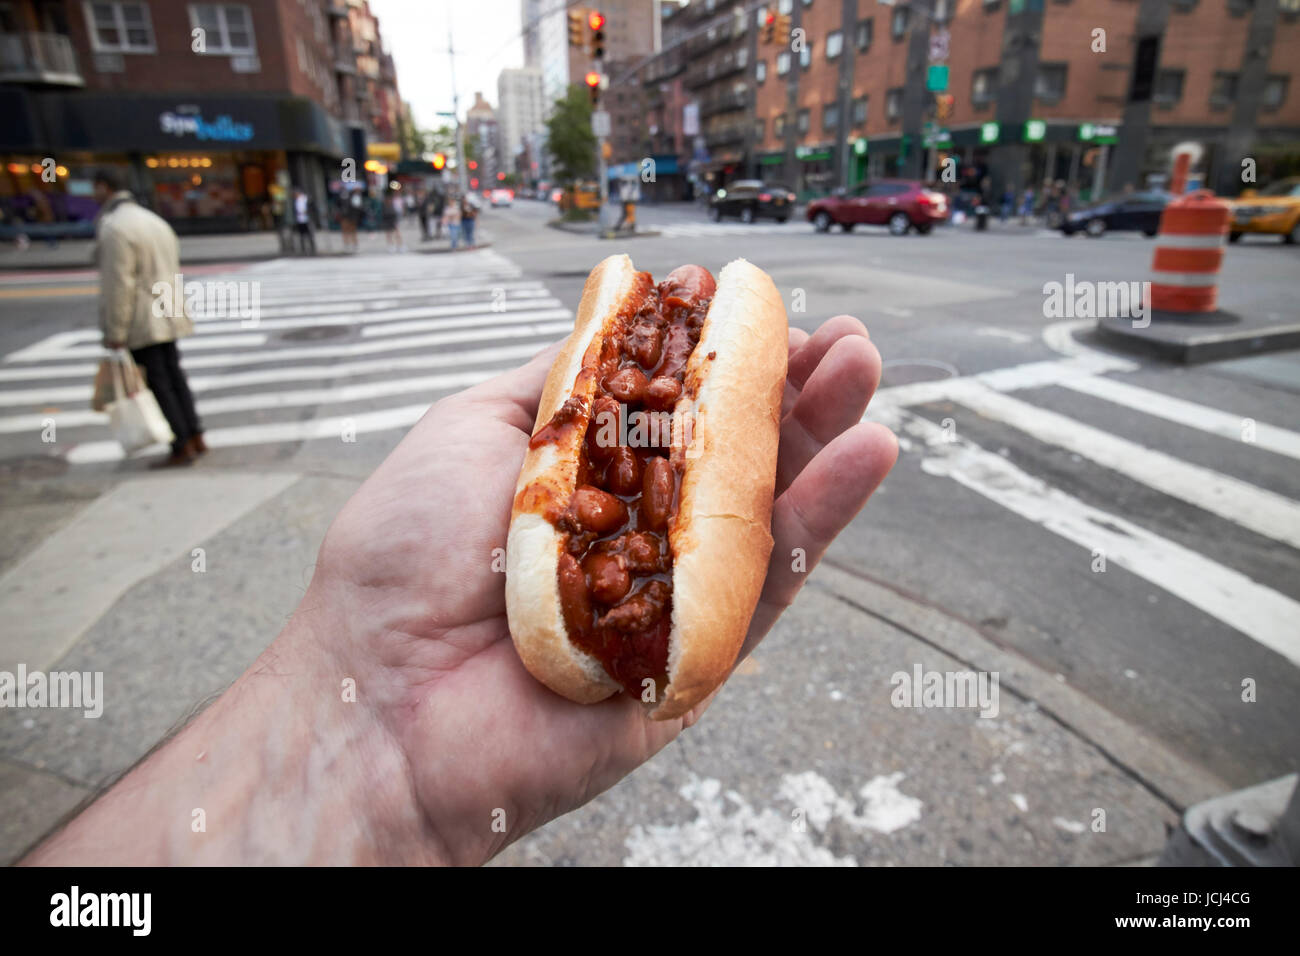 Hombre sujetando chili hot dog comida en la calle en la Ciudad de Nueva York, EE.UU. Foto de stock